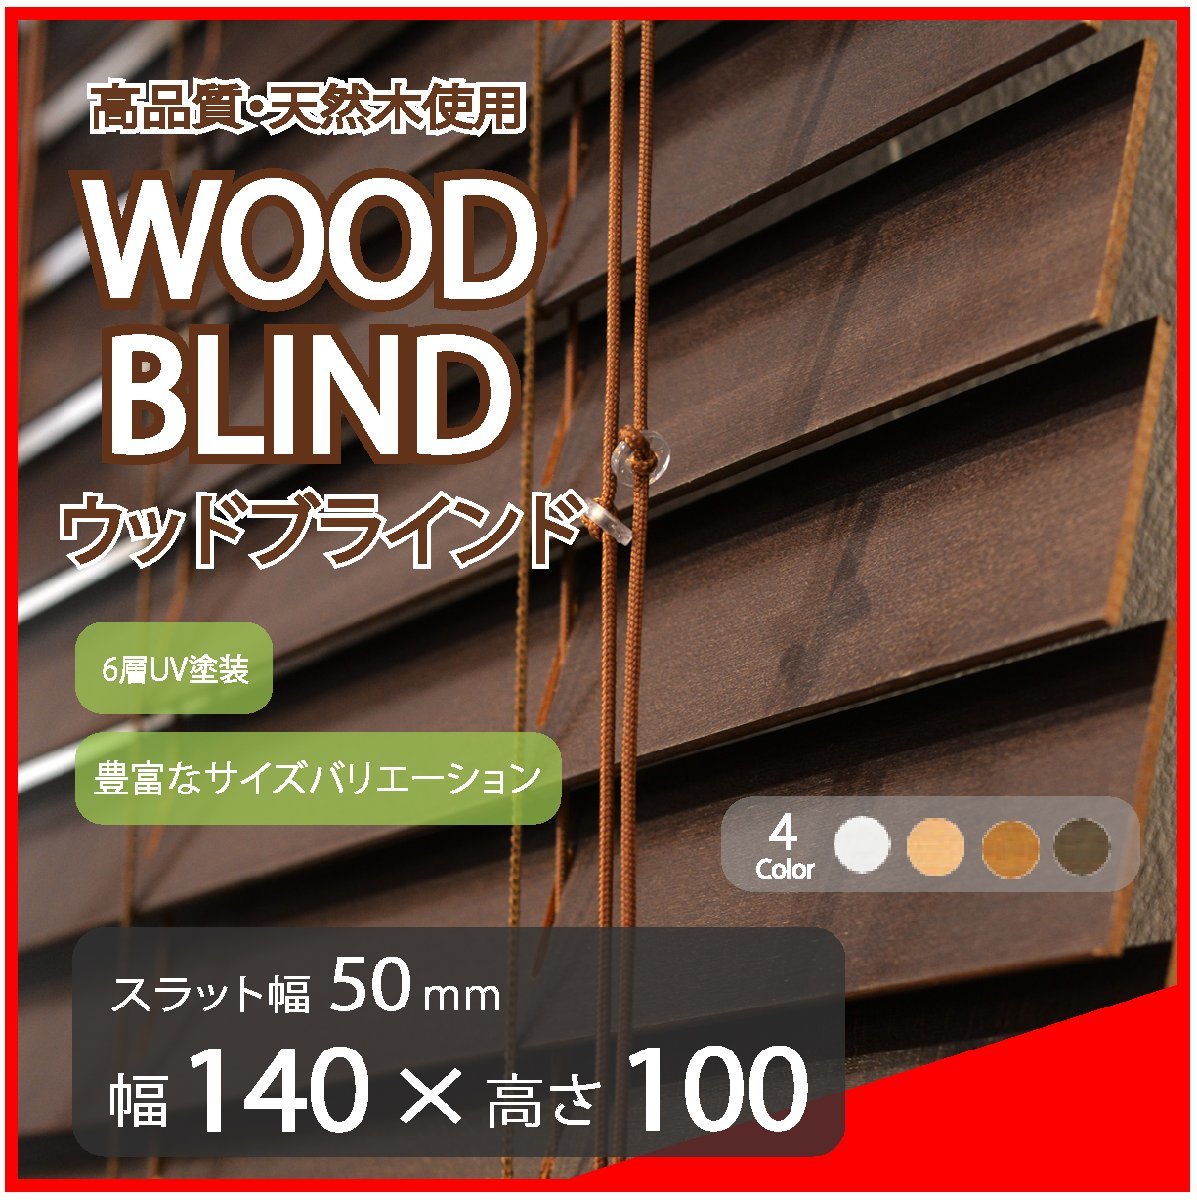 高品質 ウッドブラインド 木製 ブラインド 既成サイズ スラット(羽根)幅50mm 幅140cm×高さ100cm ダーク